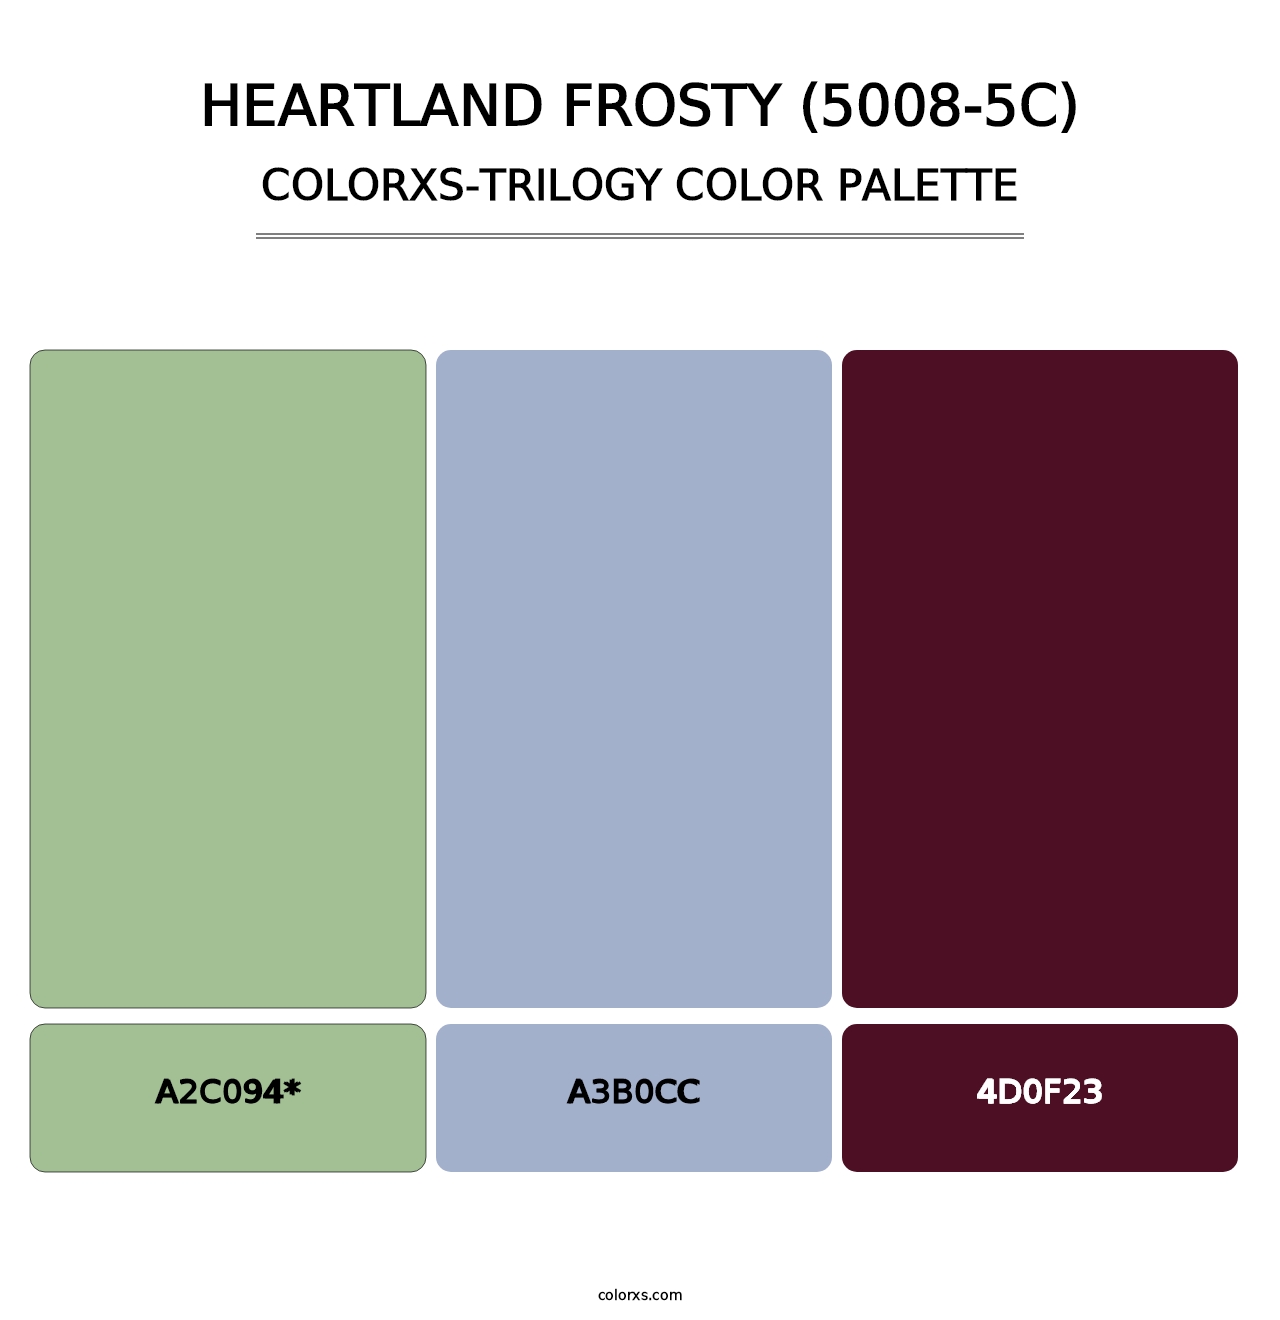 Heartland Frosty (5008-5C) - Colorxs Trilogy Palette